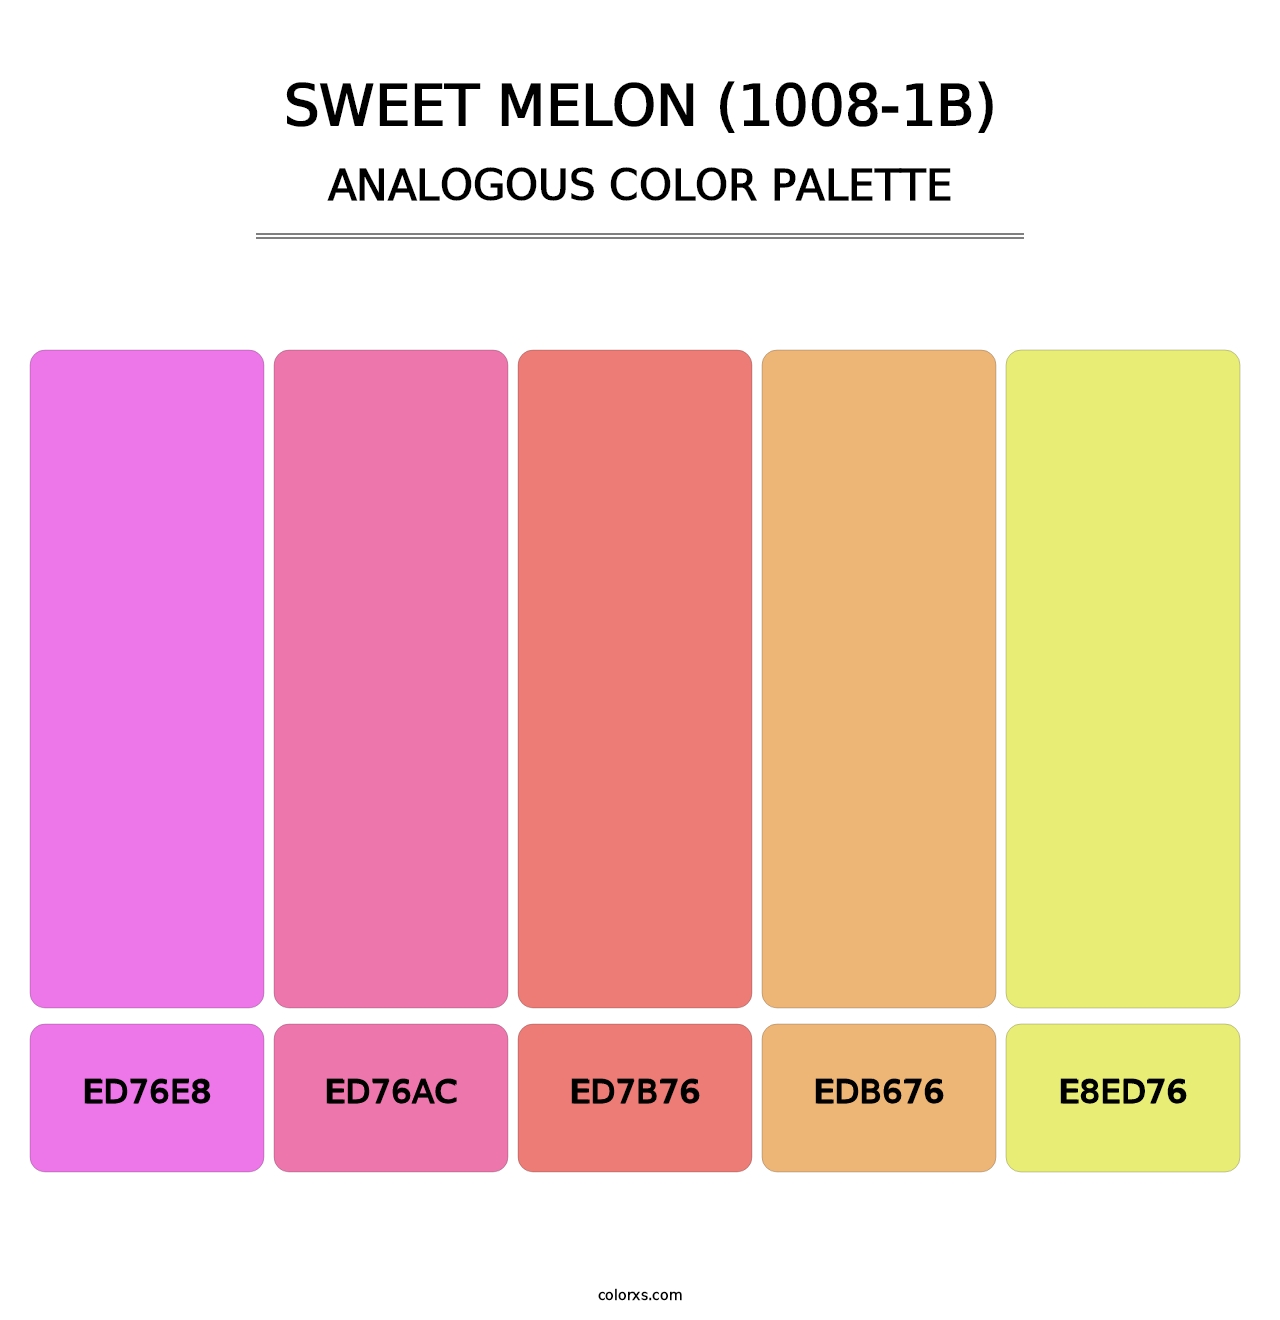 Sweet Melon (1008-1B) - Analogous Color Palette